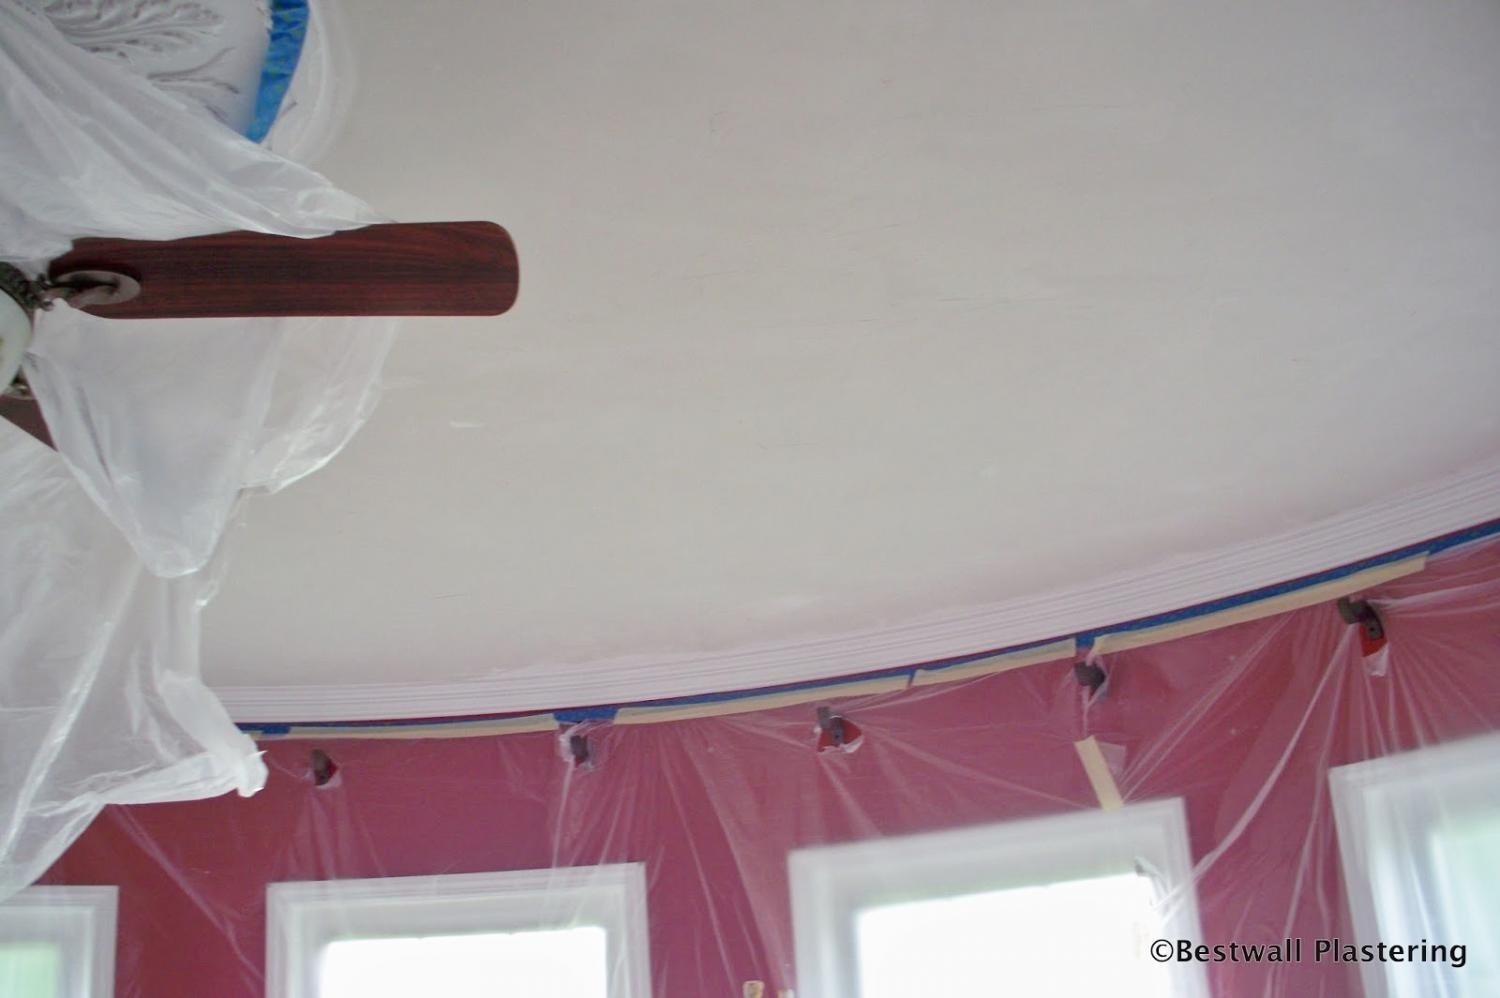 Plaster ceiling repaired, Entire ceiling re-skimmed, plastering, ceiling repair